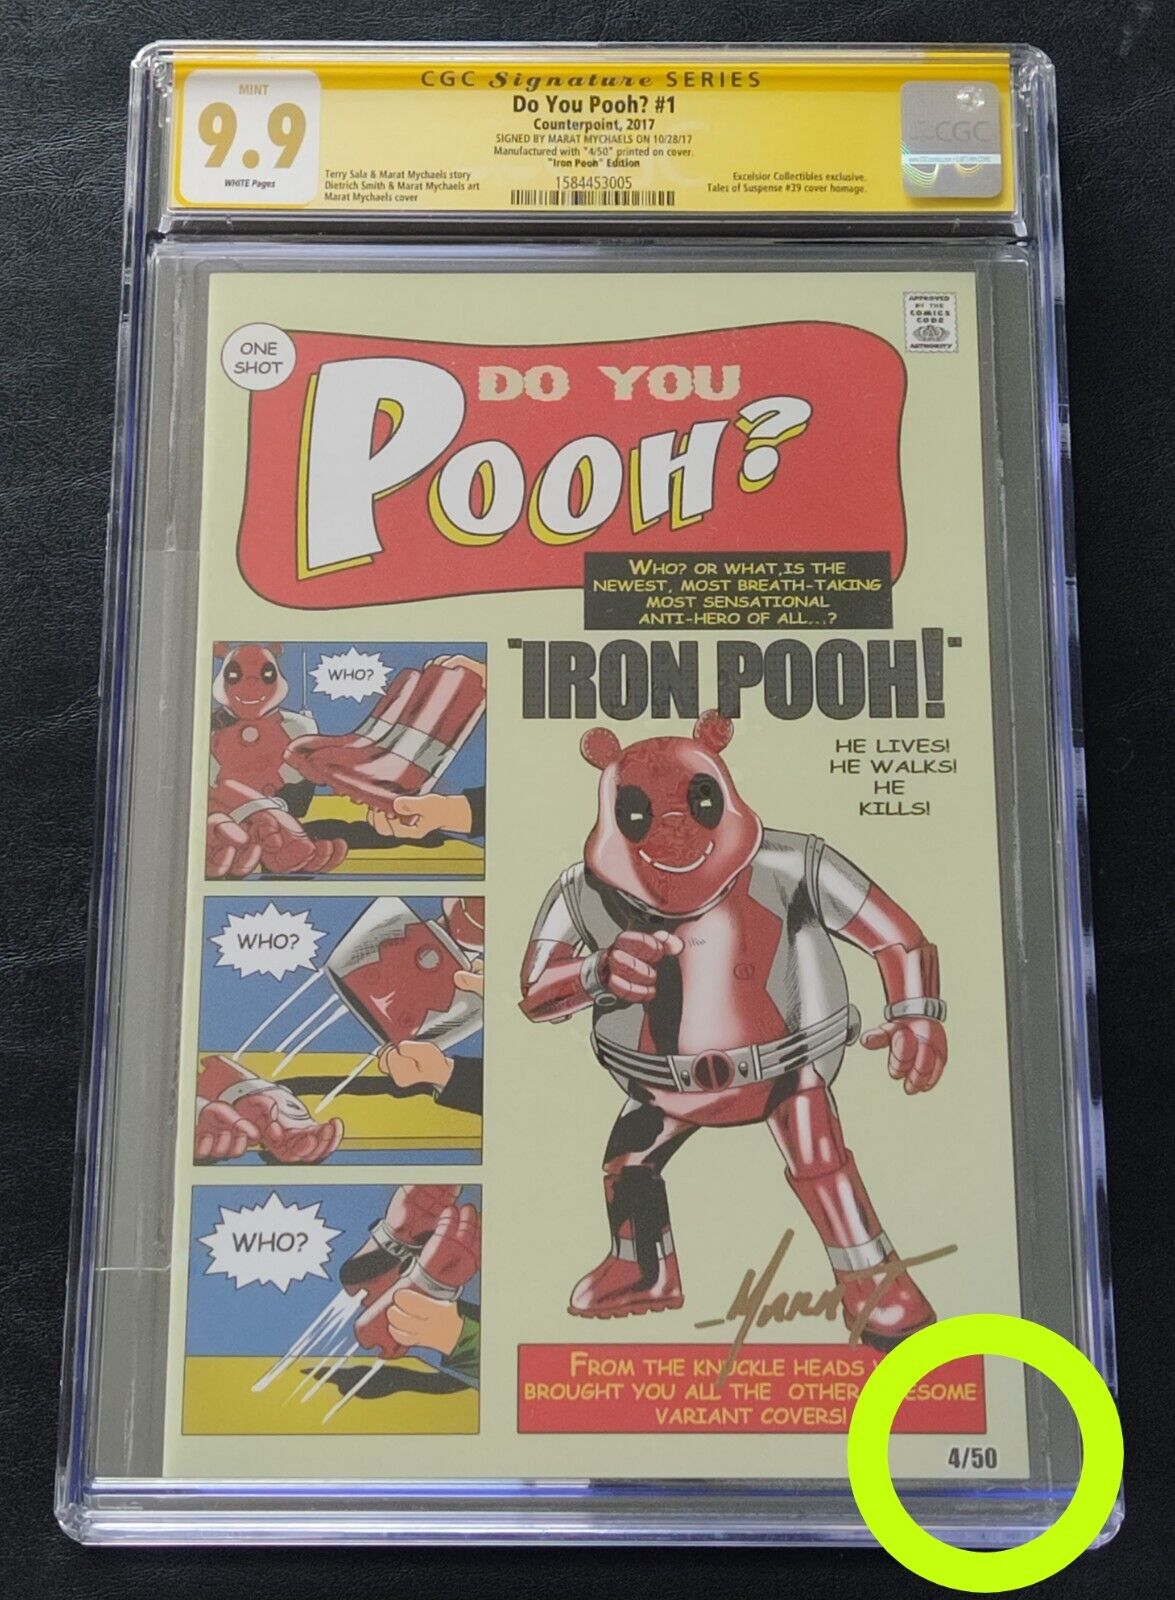 Do You Pooh # 1 - Iron Man Homage # 4/50 Signed Marat Mychaels CGC SS 9.9 WP